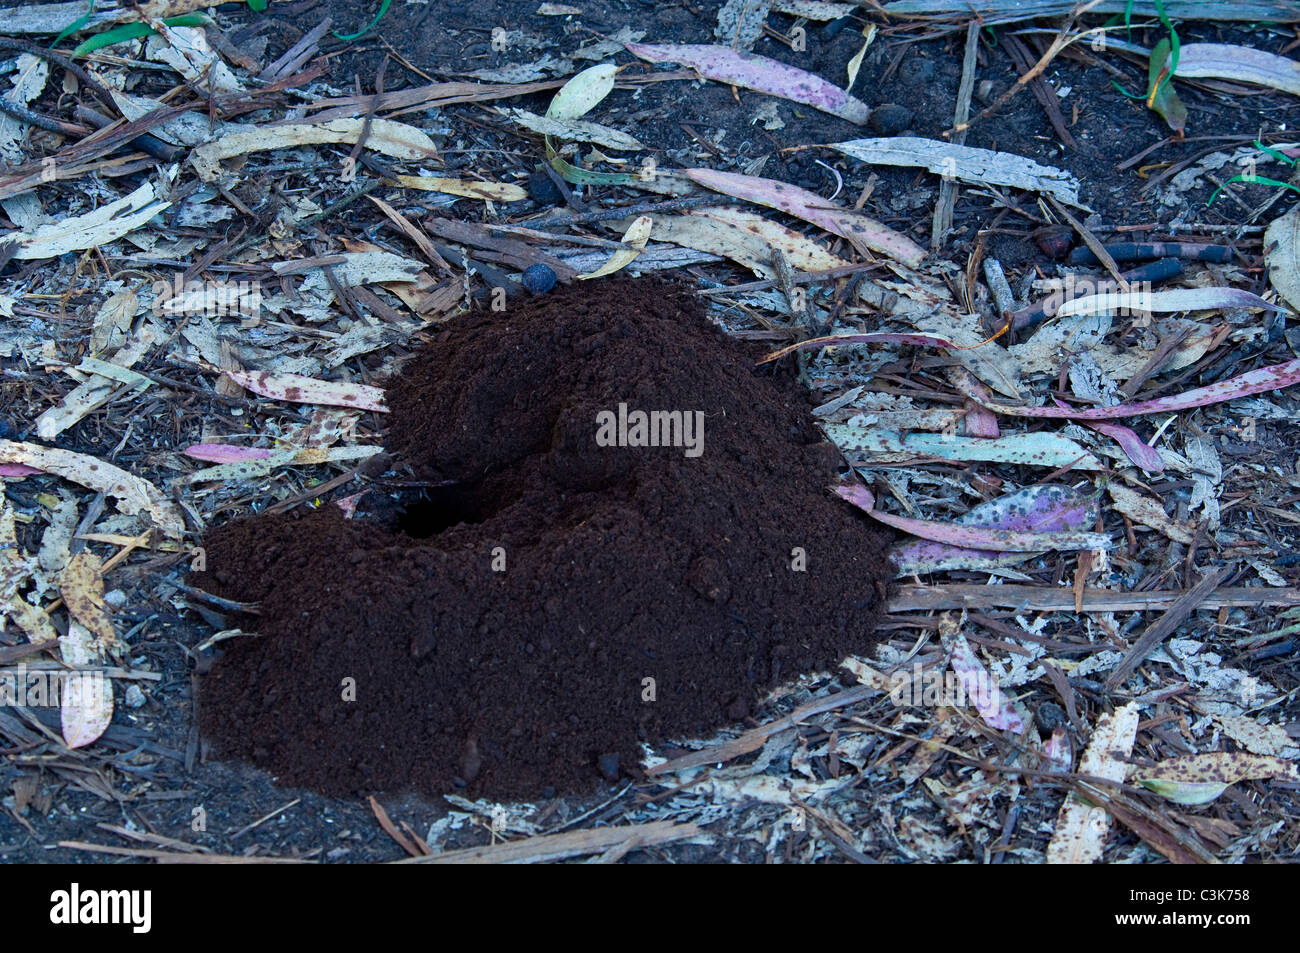 Haufen von Schmutz am frisch gegrabene Tier Nager Fuchsbau Loch in Boden im Morro Bay State Park, Morro Bay, Kalifornien Stockfoto